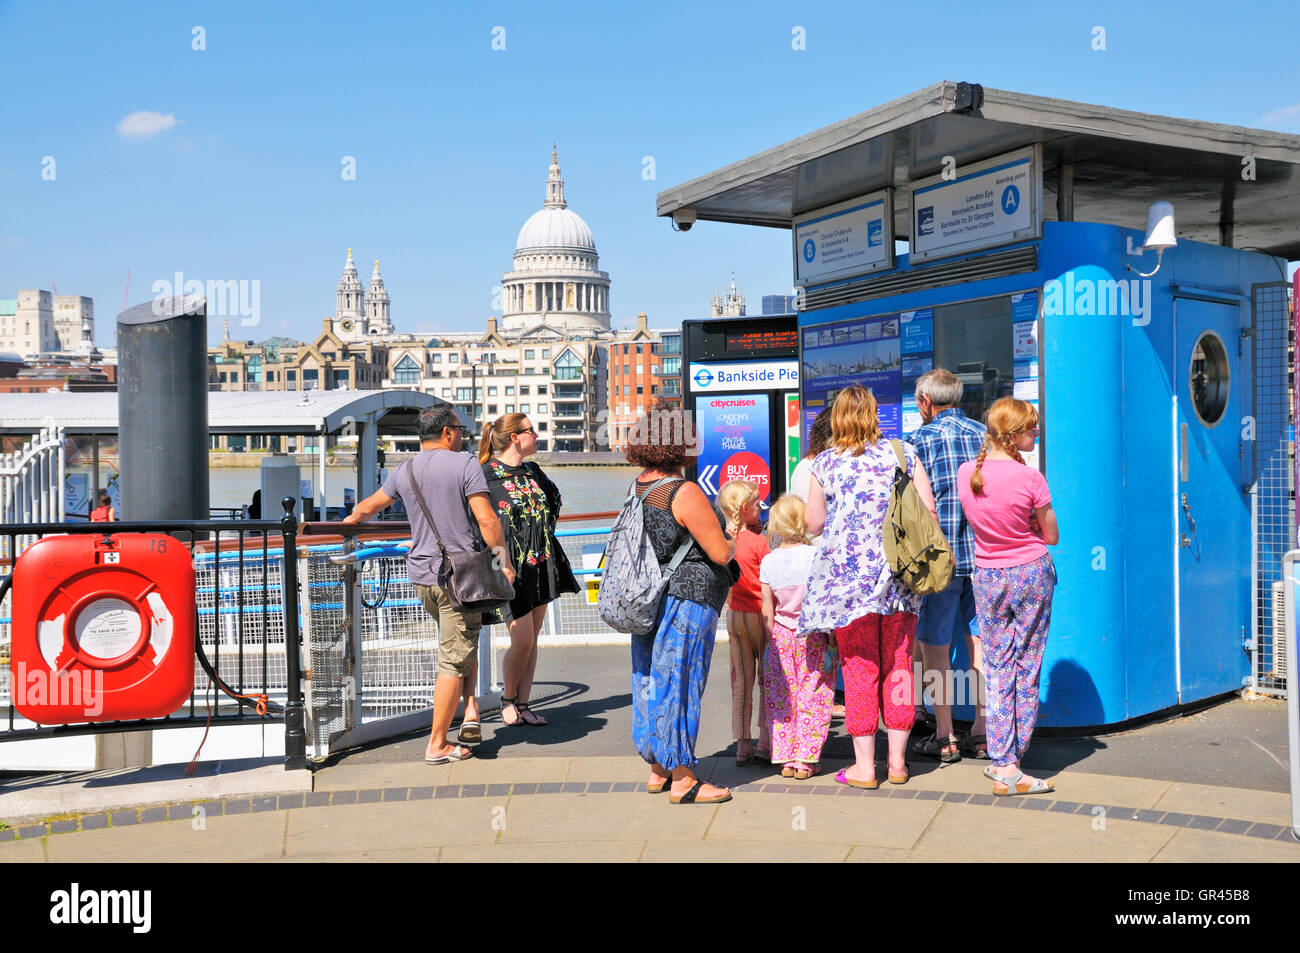 Les gens à Bankside Pier acheter des billets pour les croisières sur la Tamise, Londres, Angleterre, Royaume-Uni Banque D'Images